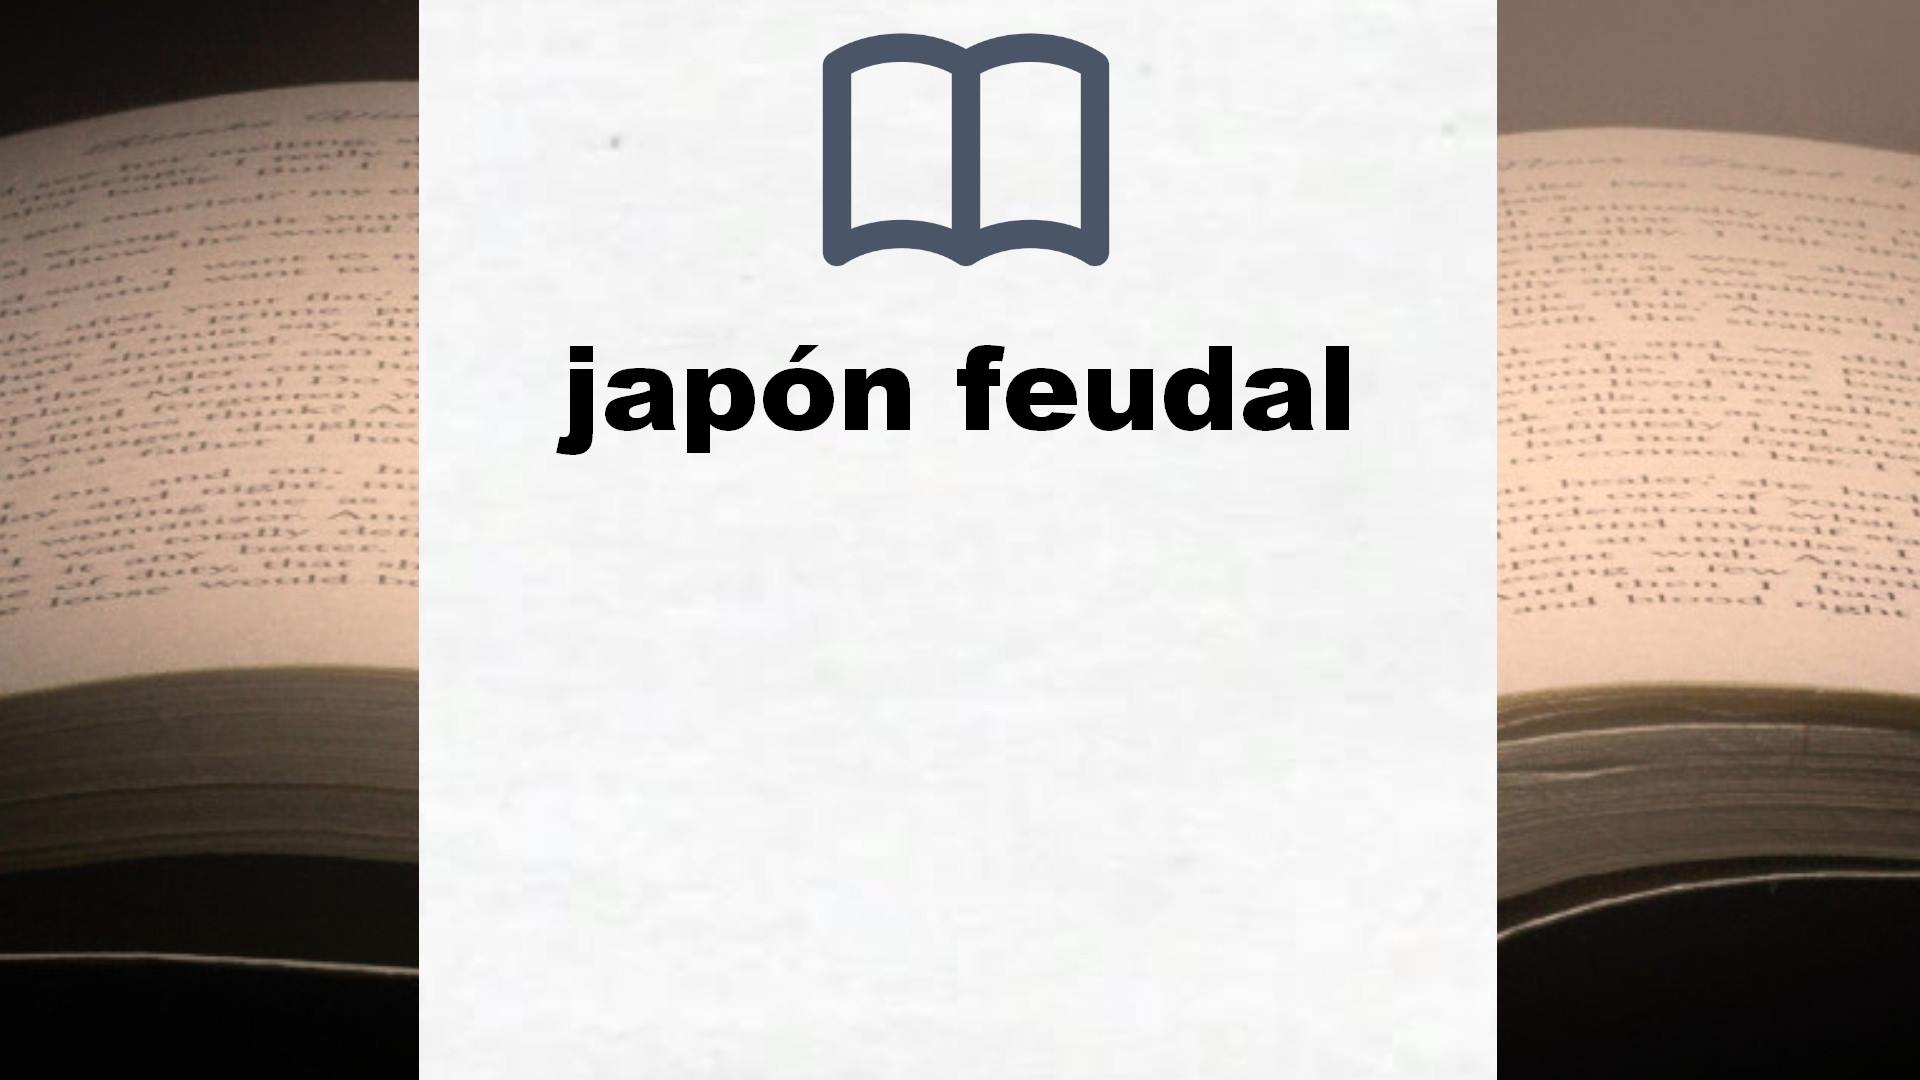 Libros sobre japón feudal